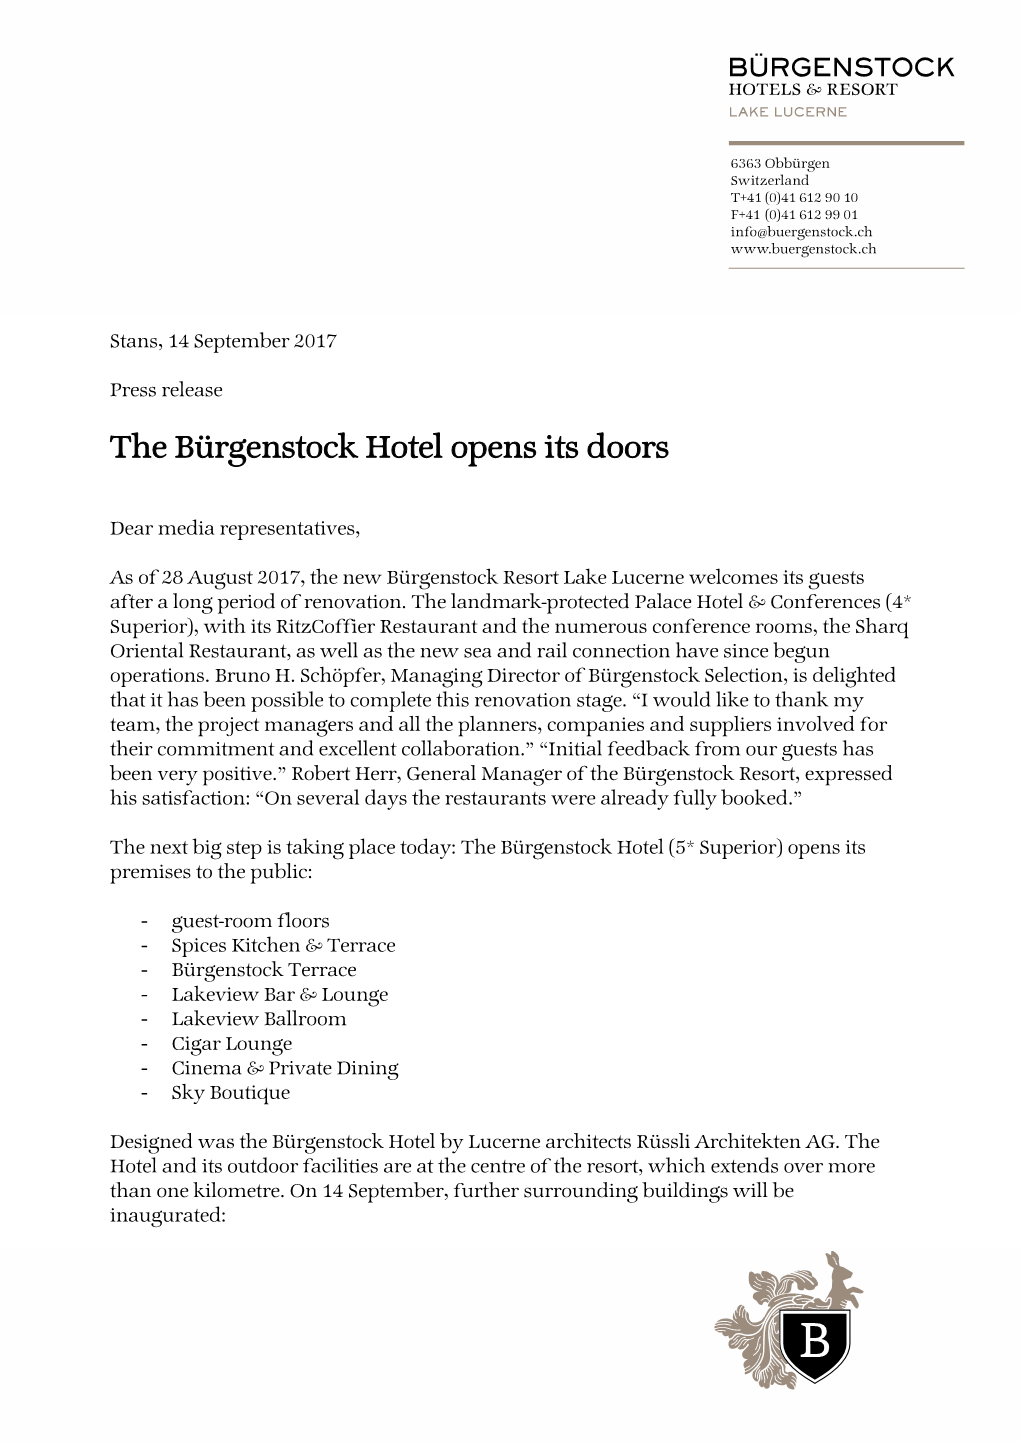 The Bürgenstock Hotel Opens Its Doors